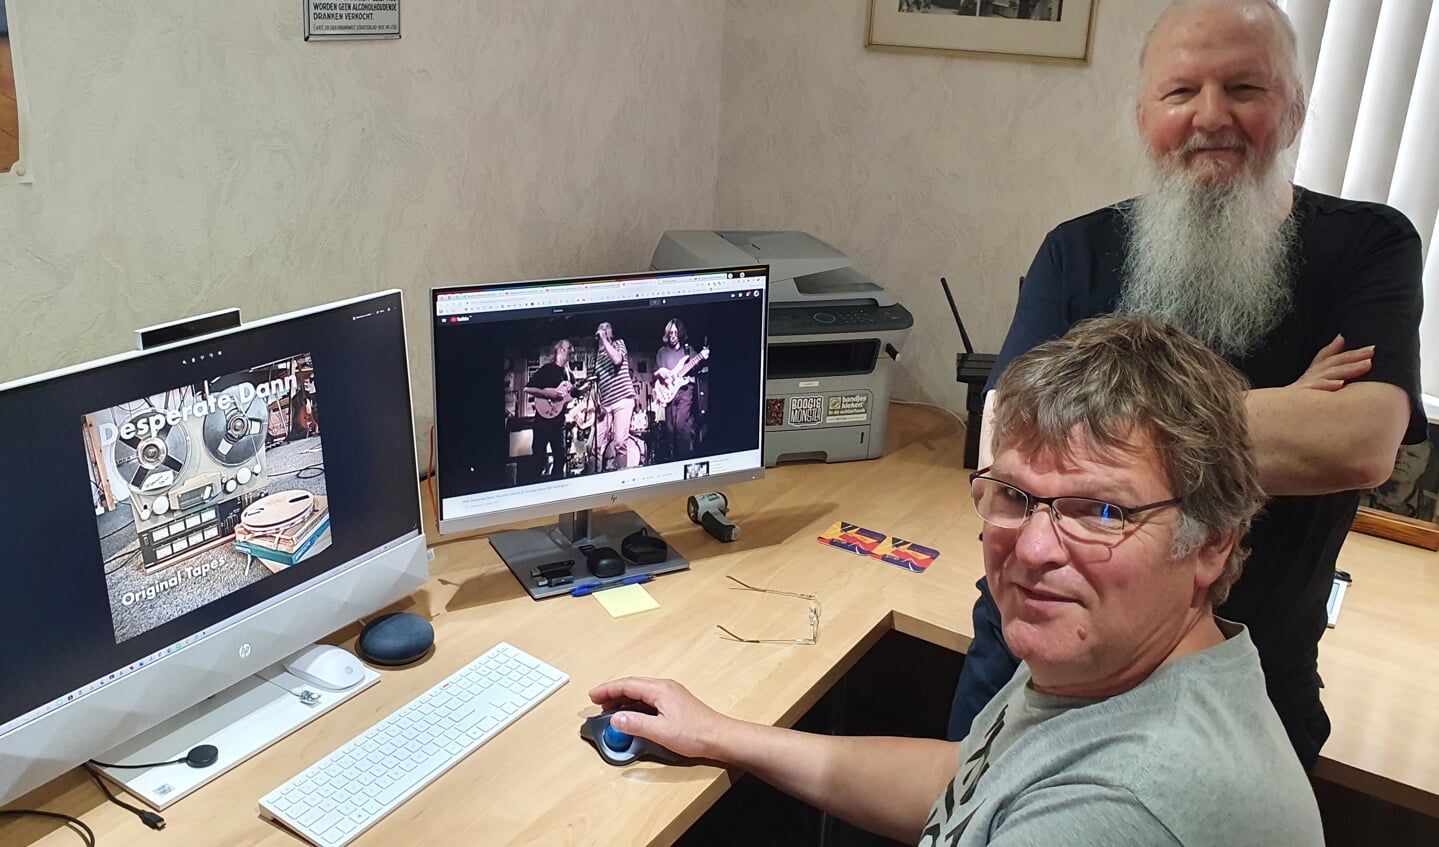 Alan kijkt toe hoe zijn 'pal' Paul van Druten het Desperate Denn materiaal in een You Tubu link verwerkt. Foto: Henri Walterbos